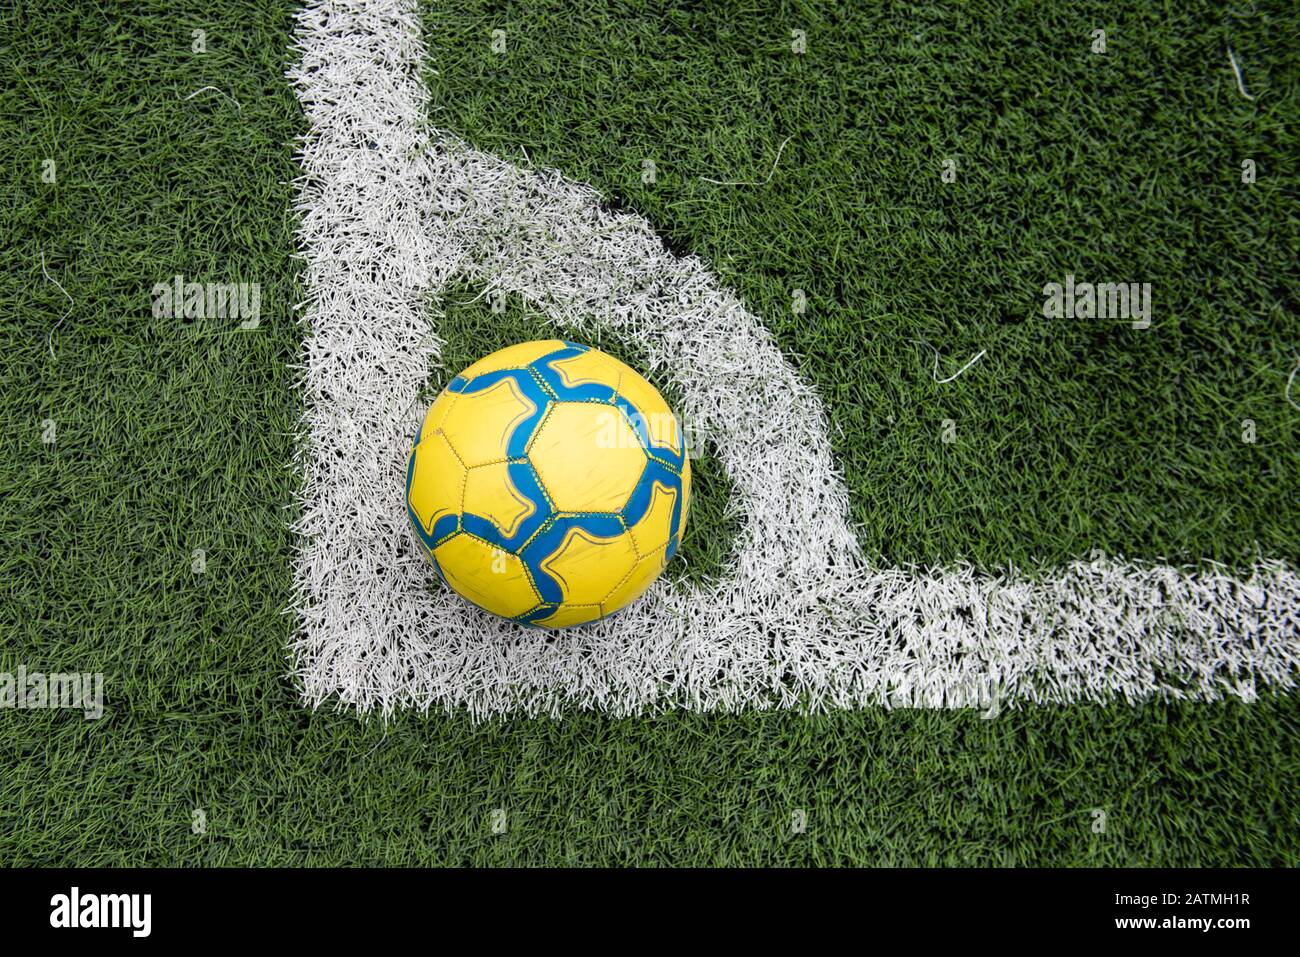 Handsewn Futbol Soccer Ball Yellow with Blue Wavy Stripes FCB Futbol Clu... 